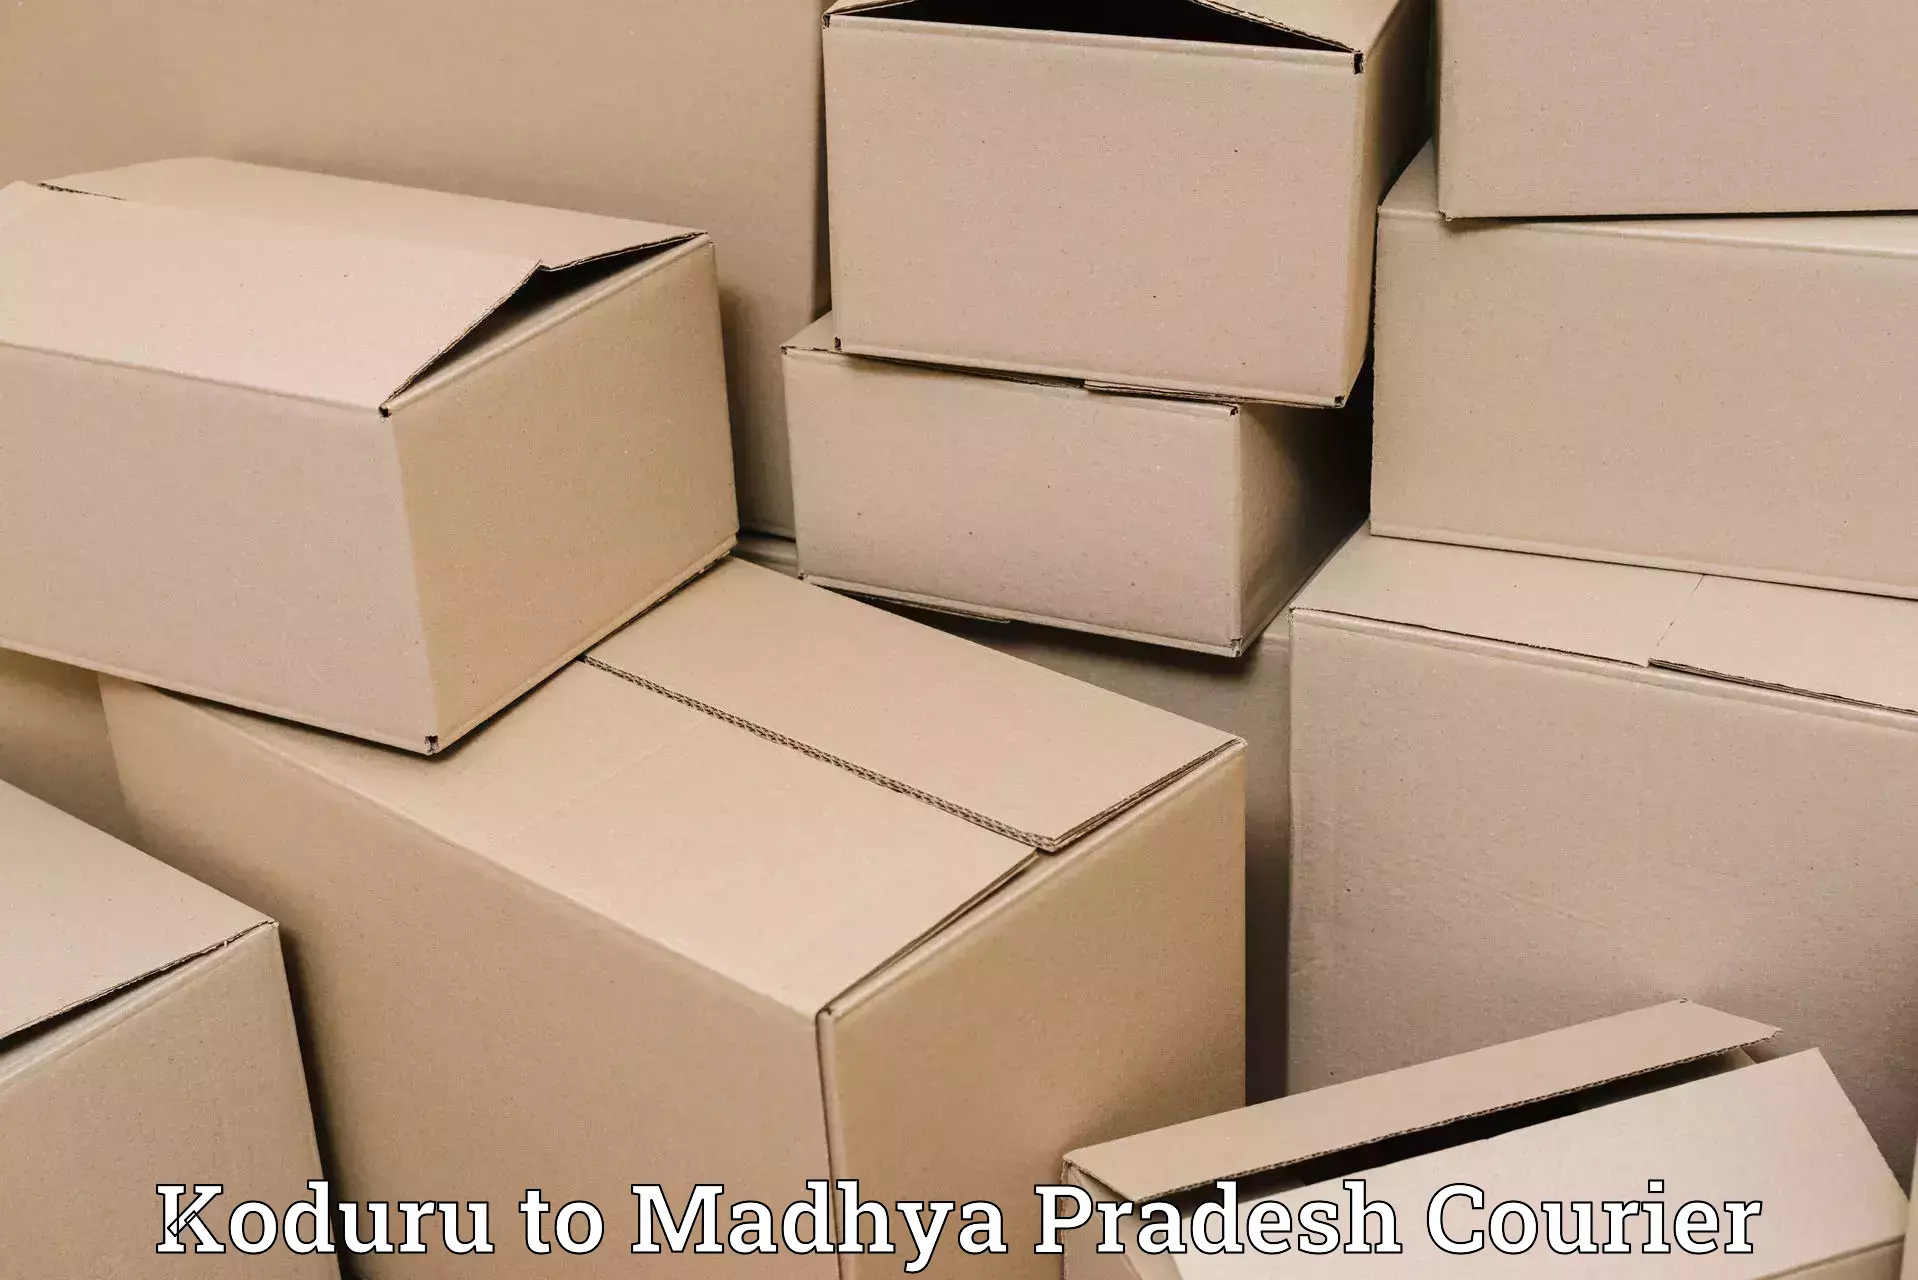 Modern courier technology in Koduru to IIT Indore